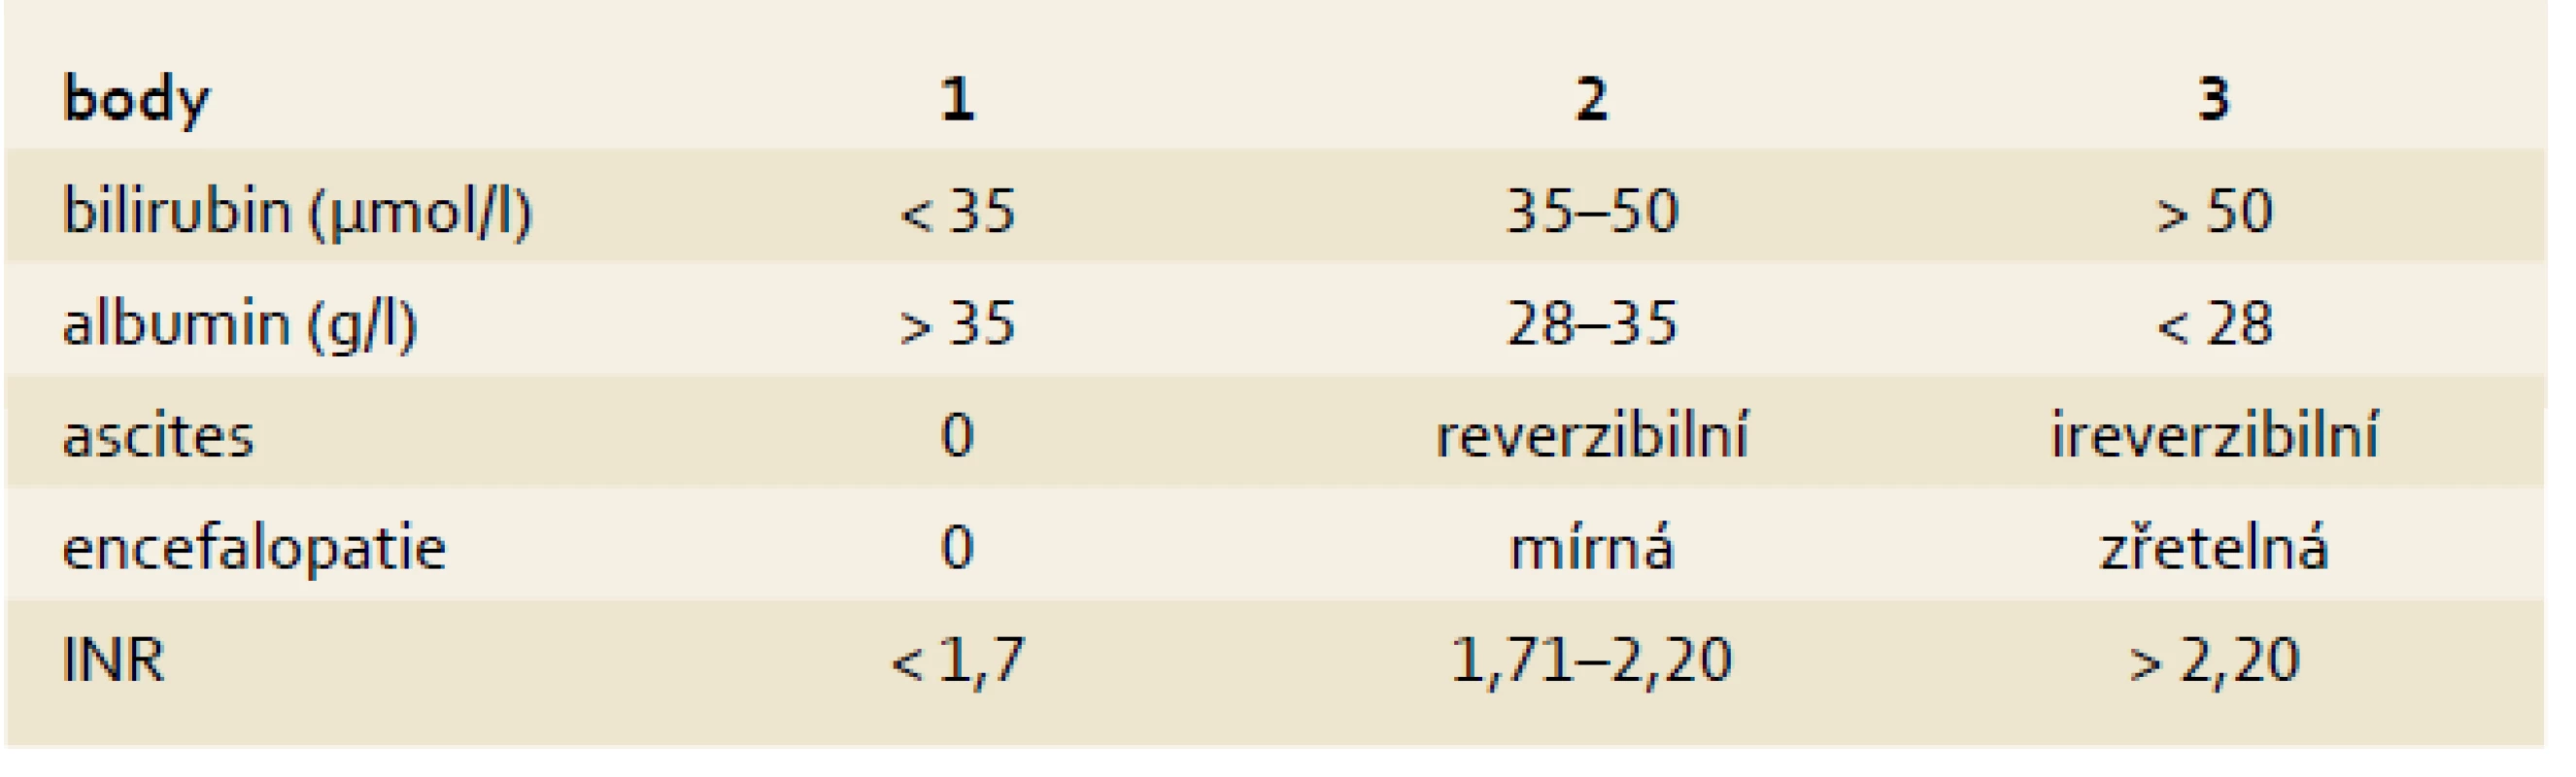 Child-Pugh klasifikace pokročilosti jaterní cirhózy.
Tab. 2. Child-Pugh classification of severity of liver disease.